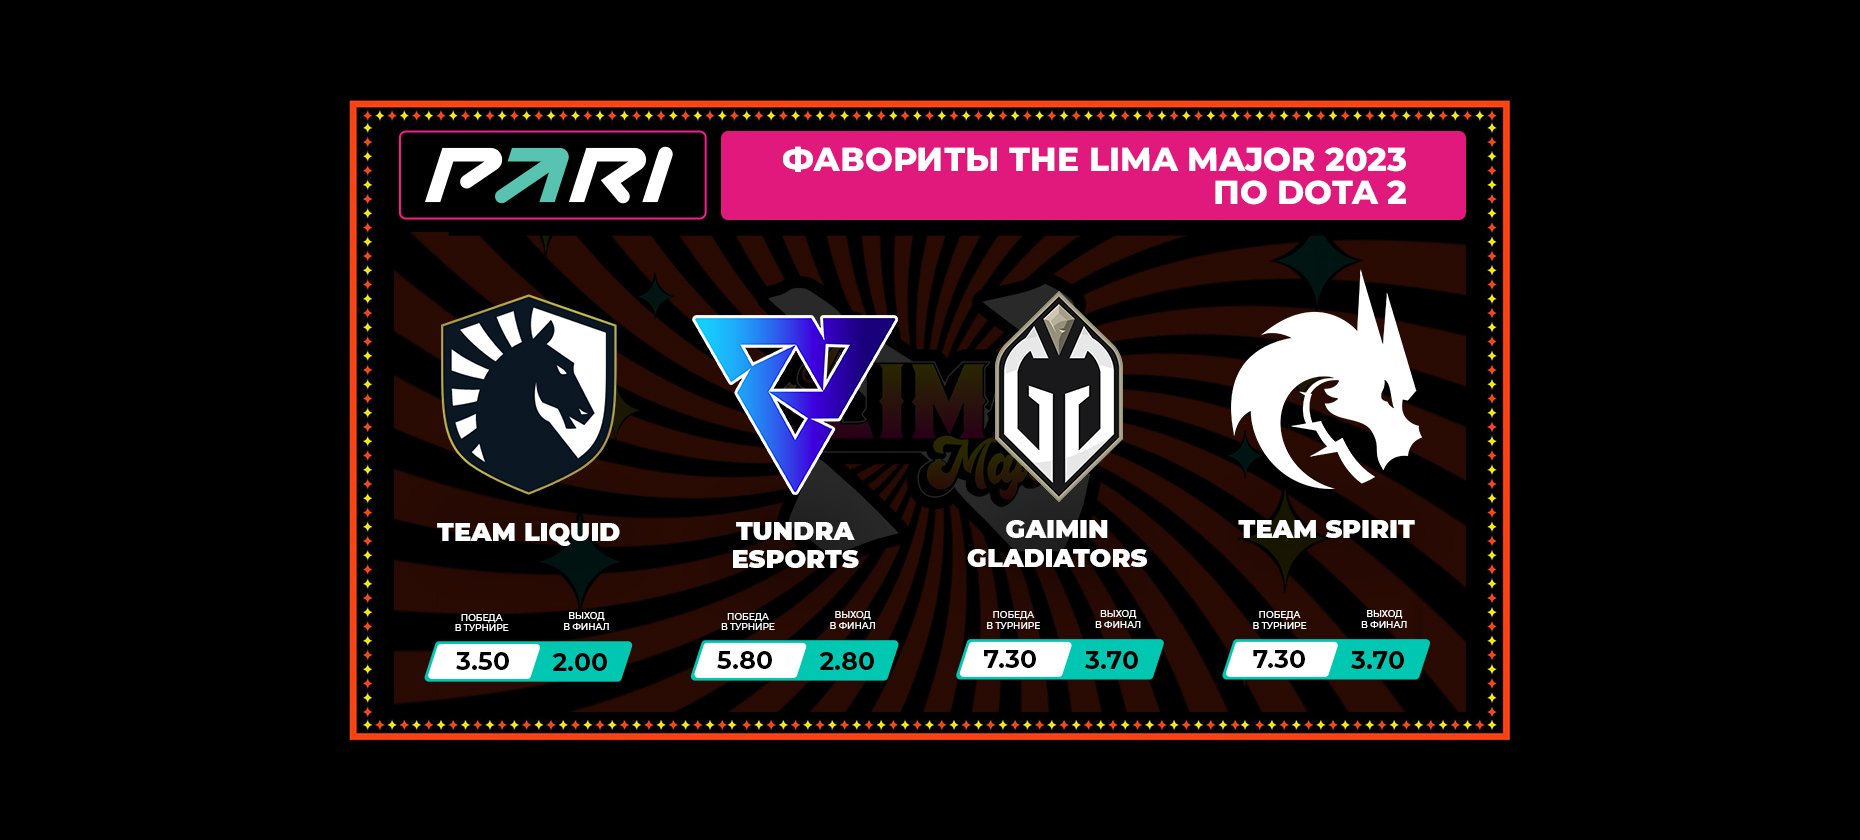 PARI: Team Liquid – главный претендент на чемпионство на The Lima Major 2023